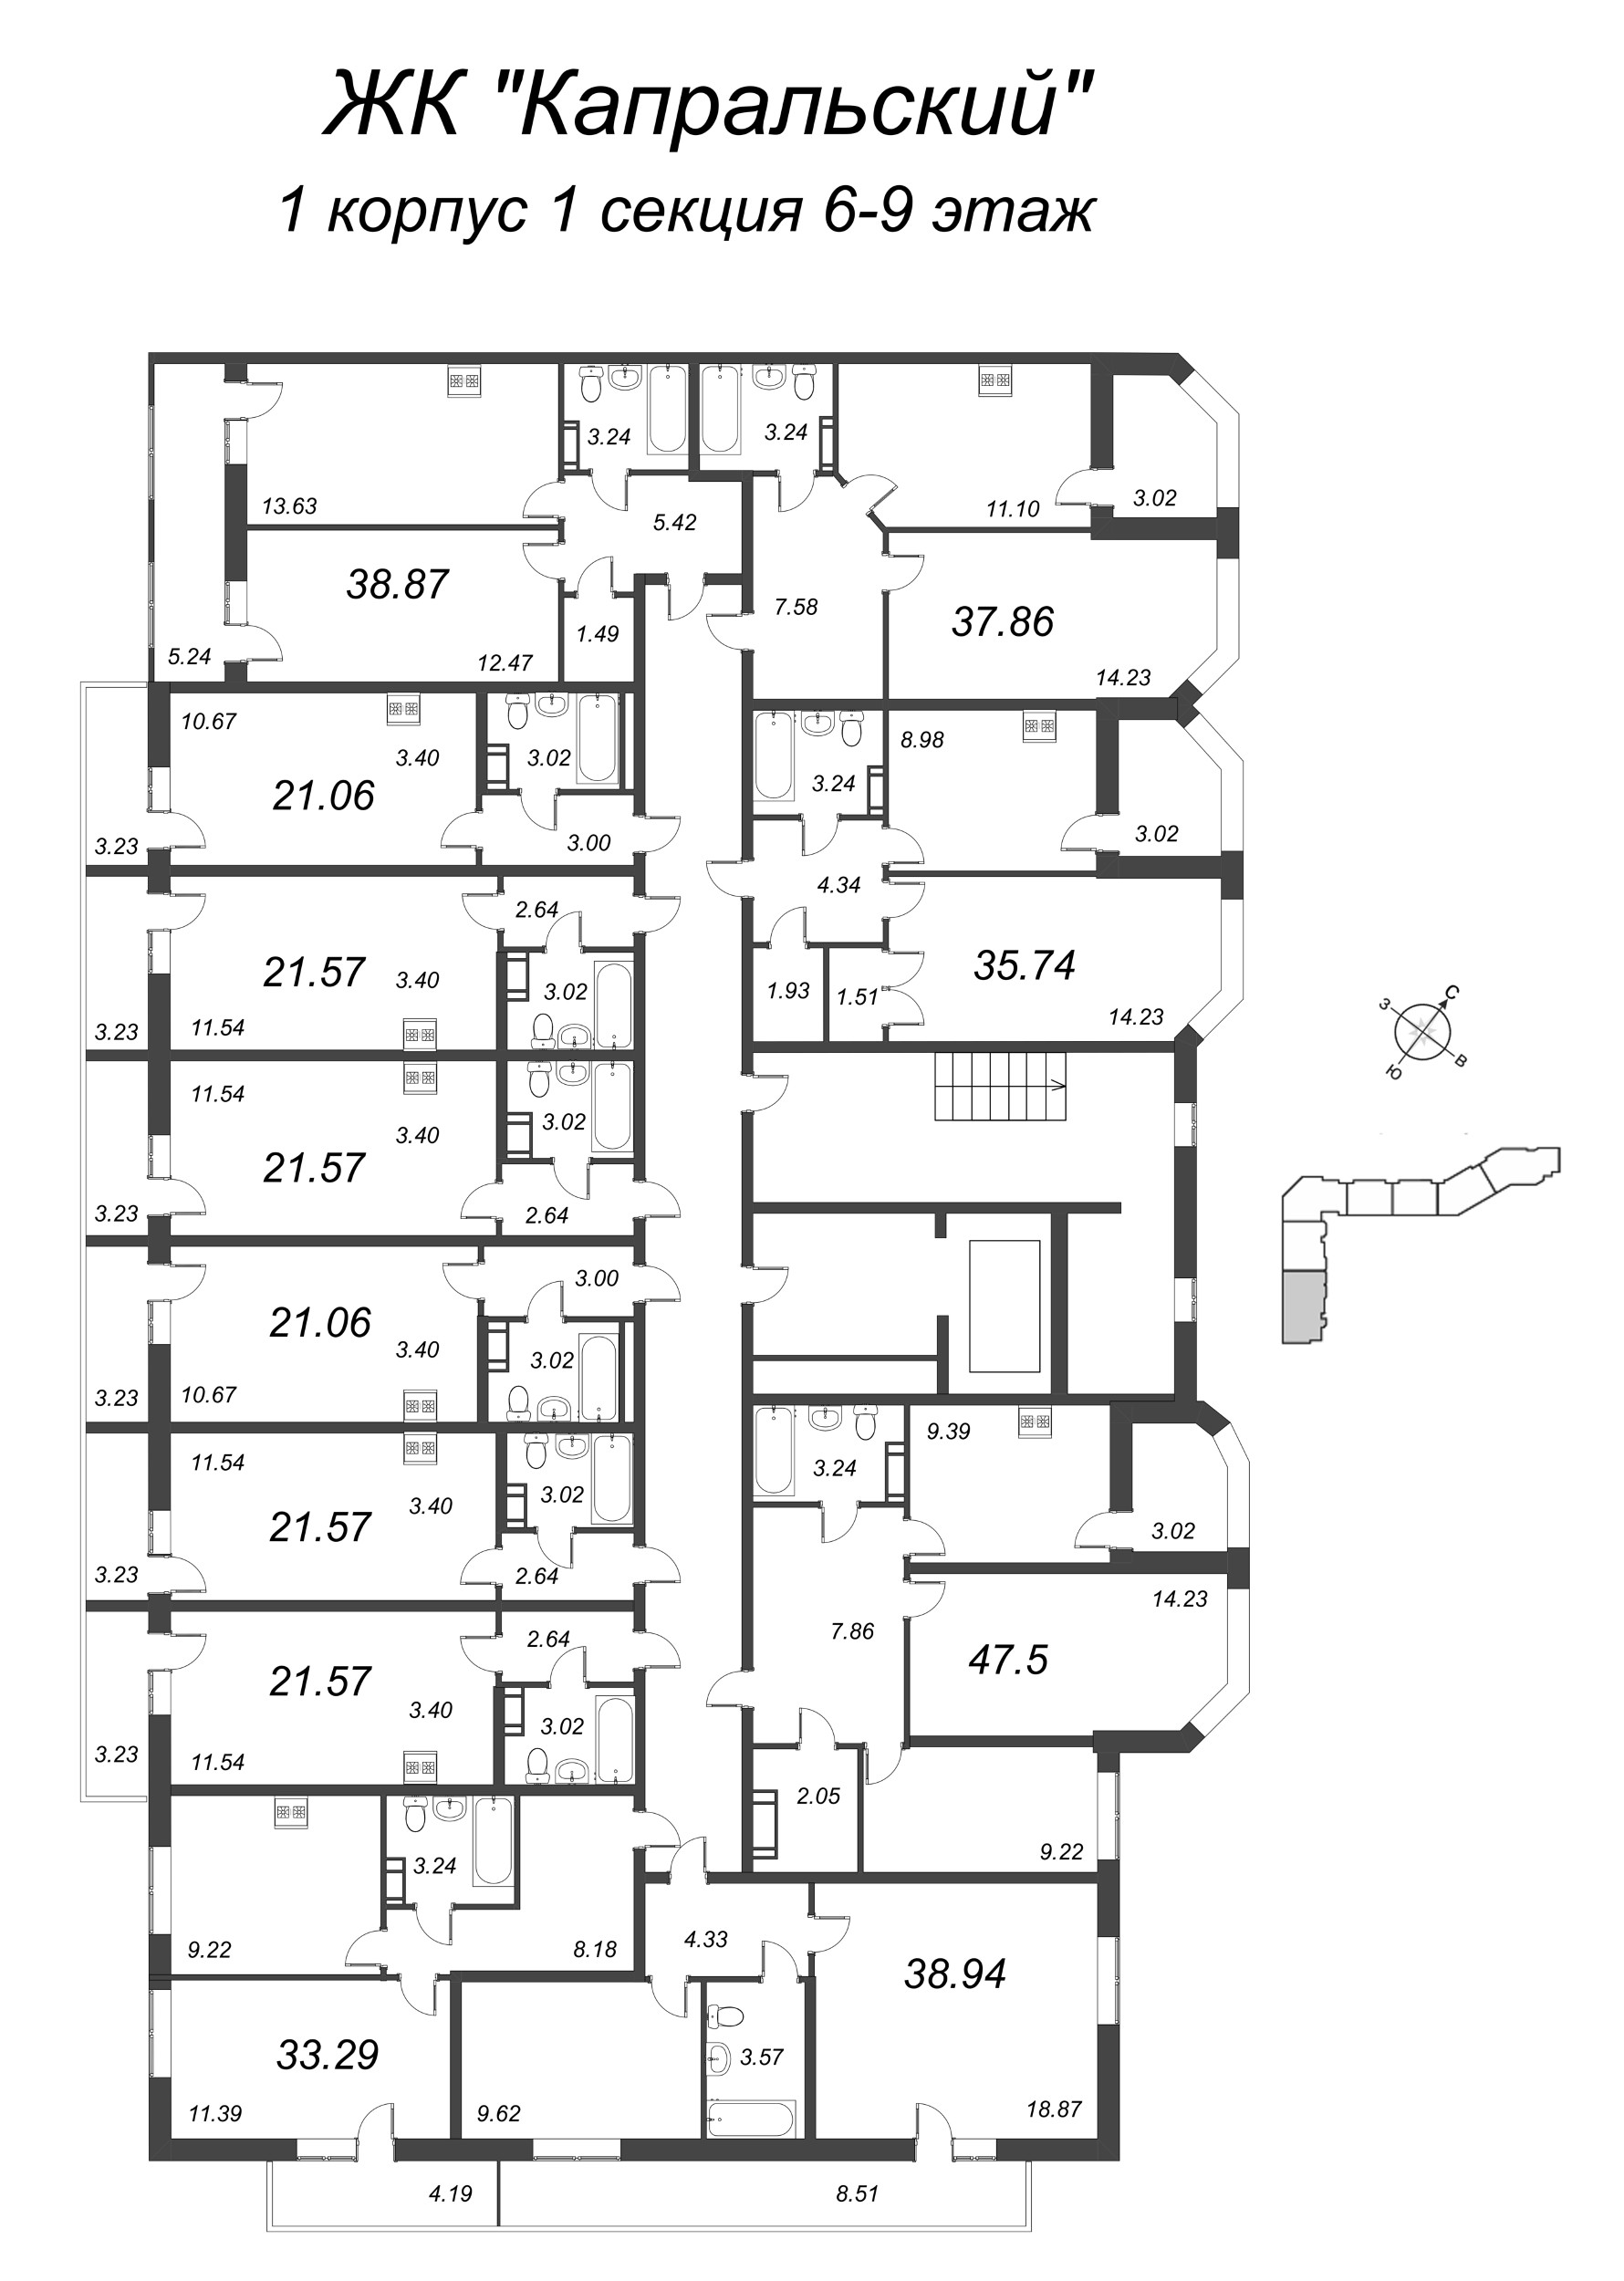 Квартира-студия, 21.57 м² в ЖК "Капральский" - планировка этажа